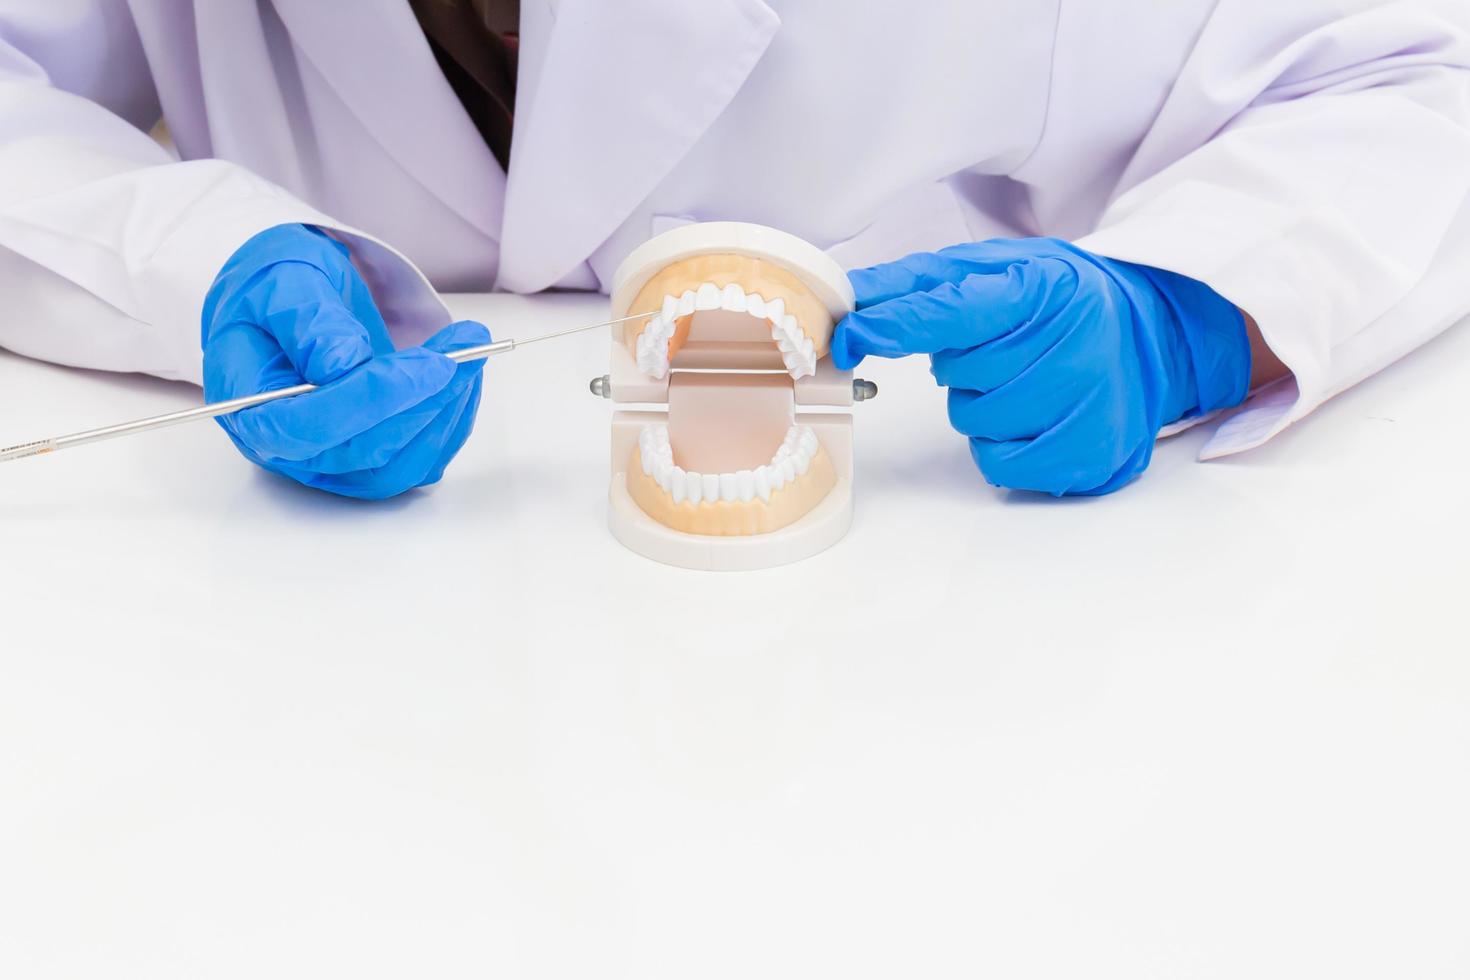 asiatische zahnärztin bringt wissen mit zahnersatzausrüstung in zahnkliniken ein. foto